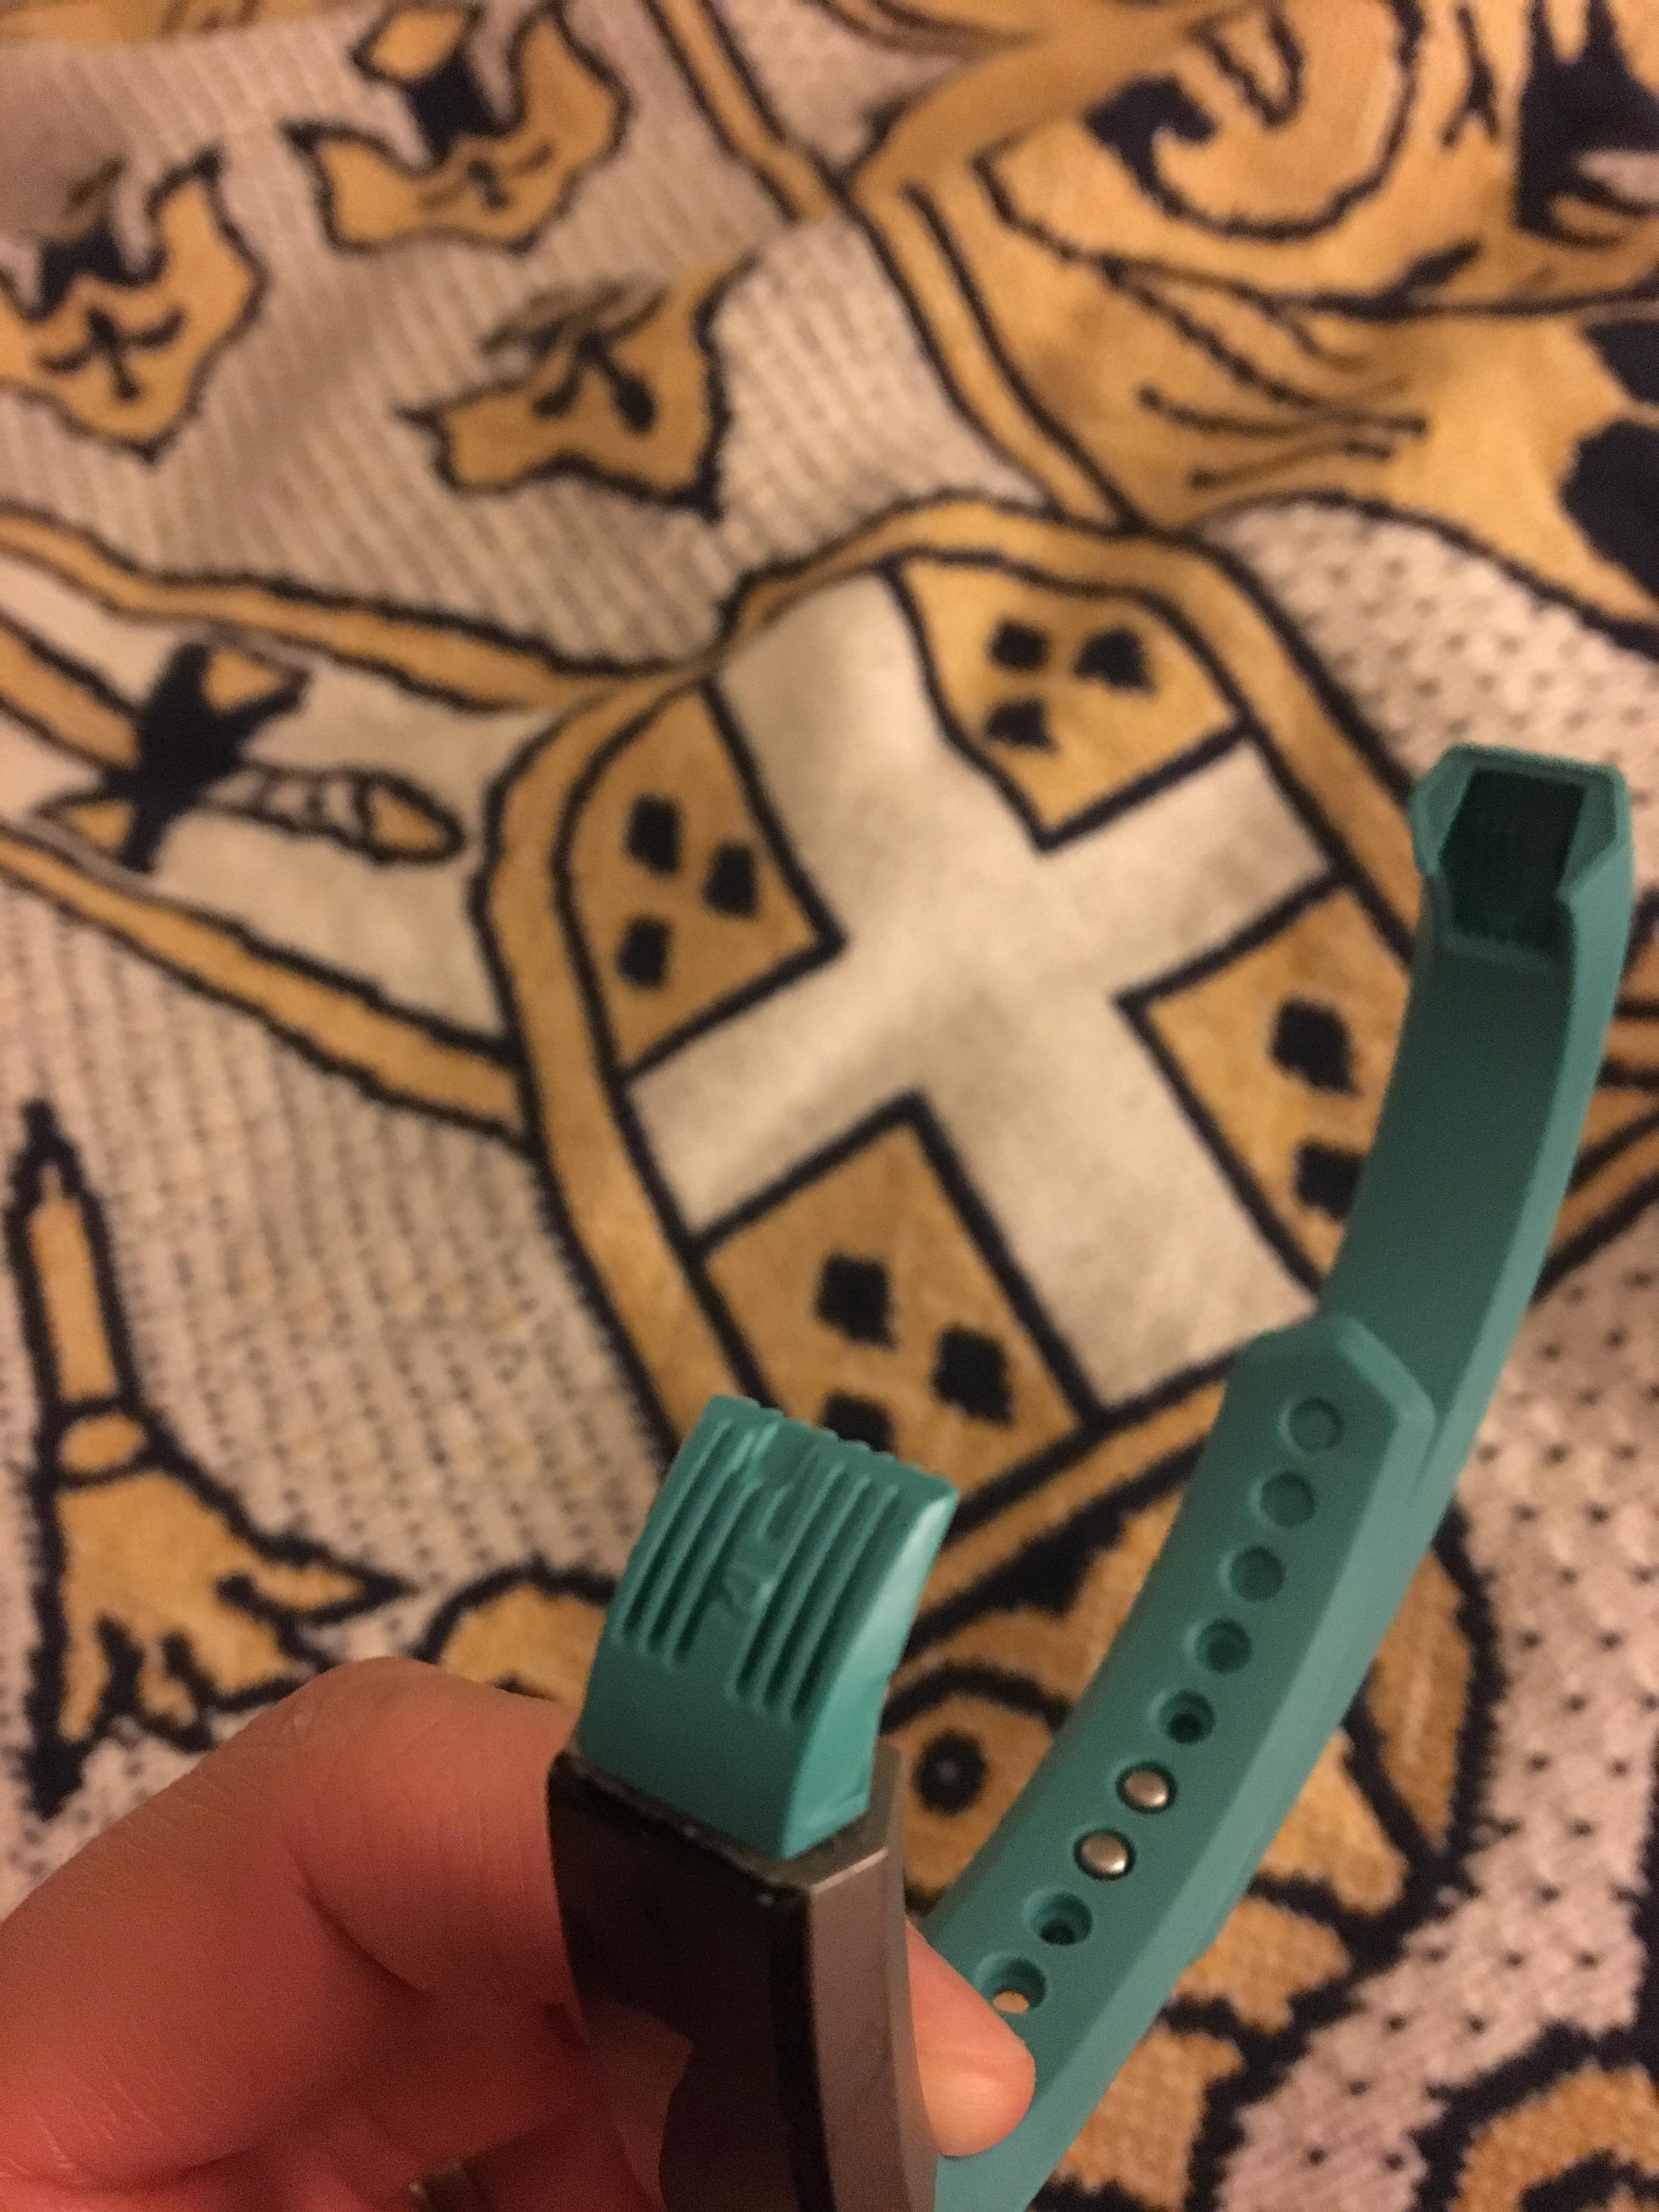 fitbit strap broke